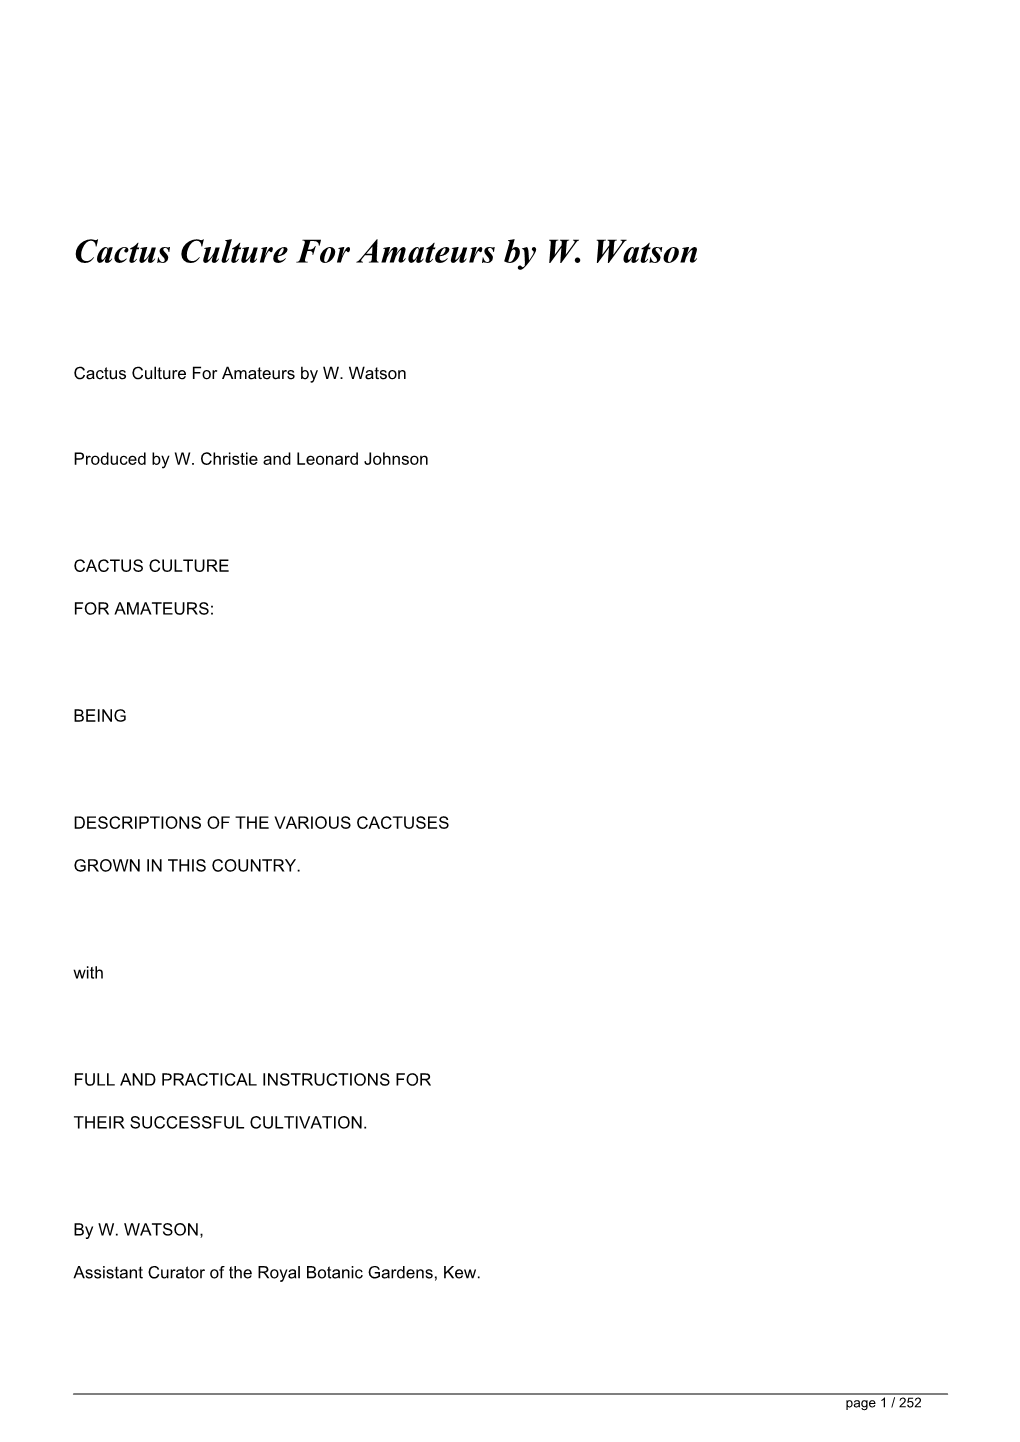 Cactus Culture for Amateurs by W. Watson&lt;/H1&gt;